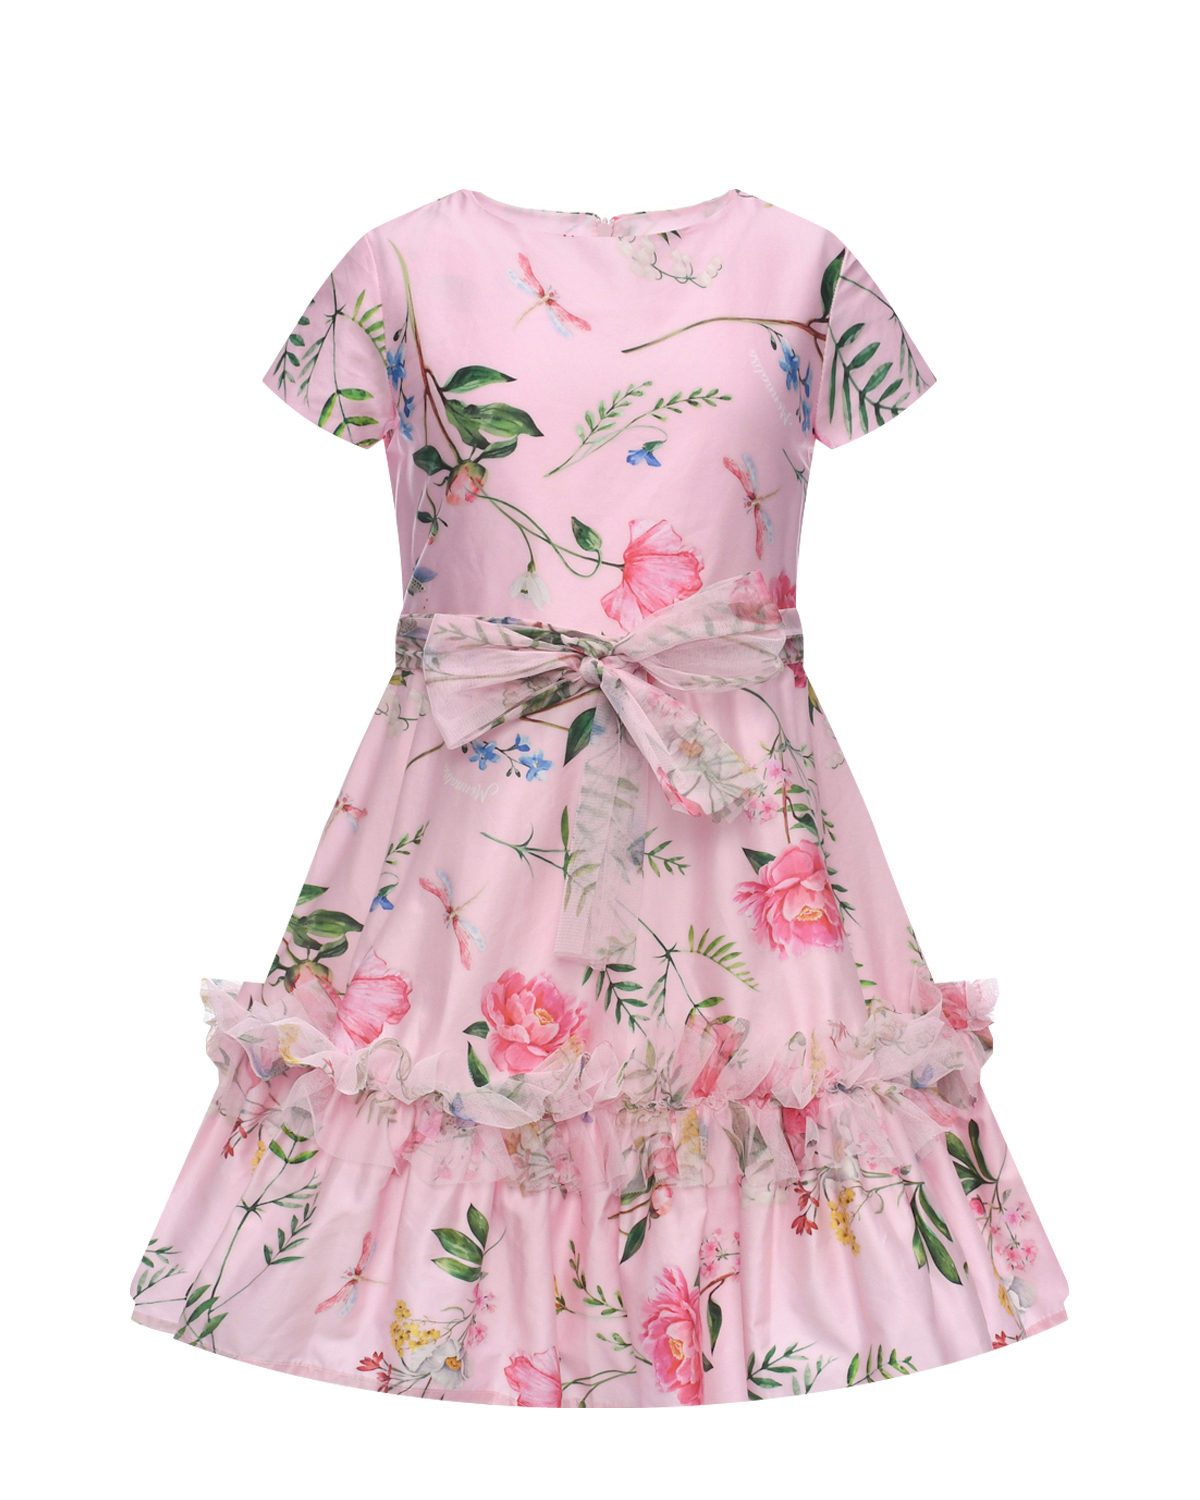 Платье со сплошным цветочным принтом Monnalisa, размер 116 - фото 1